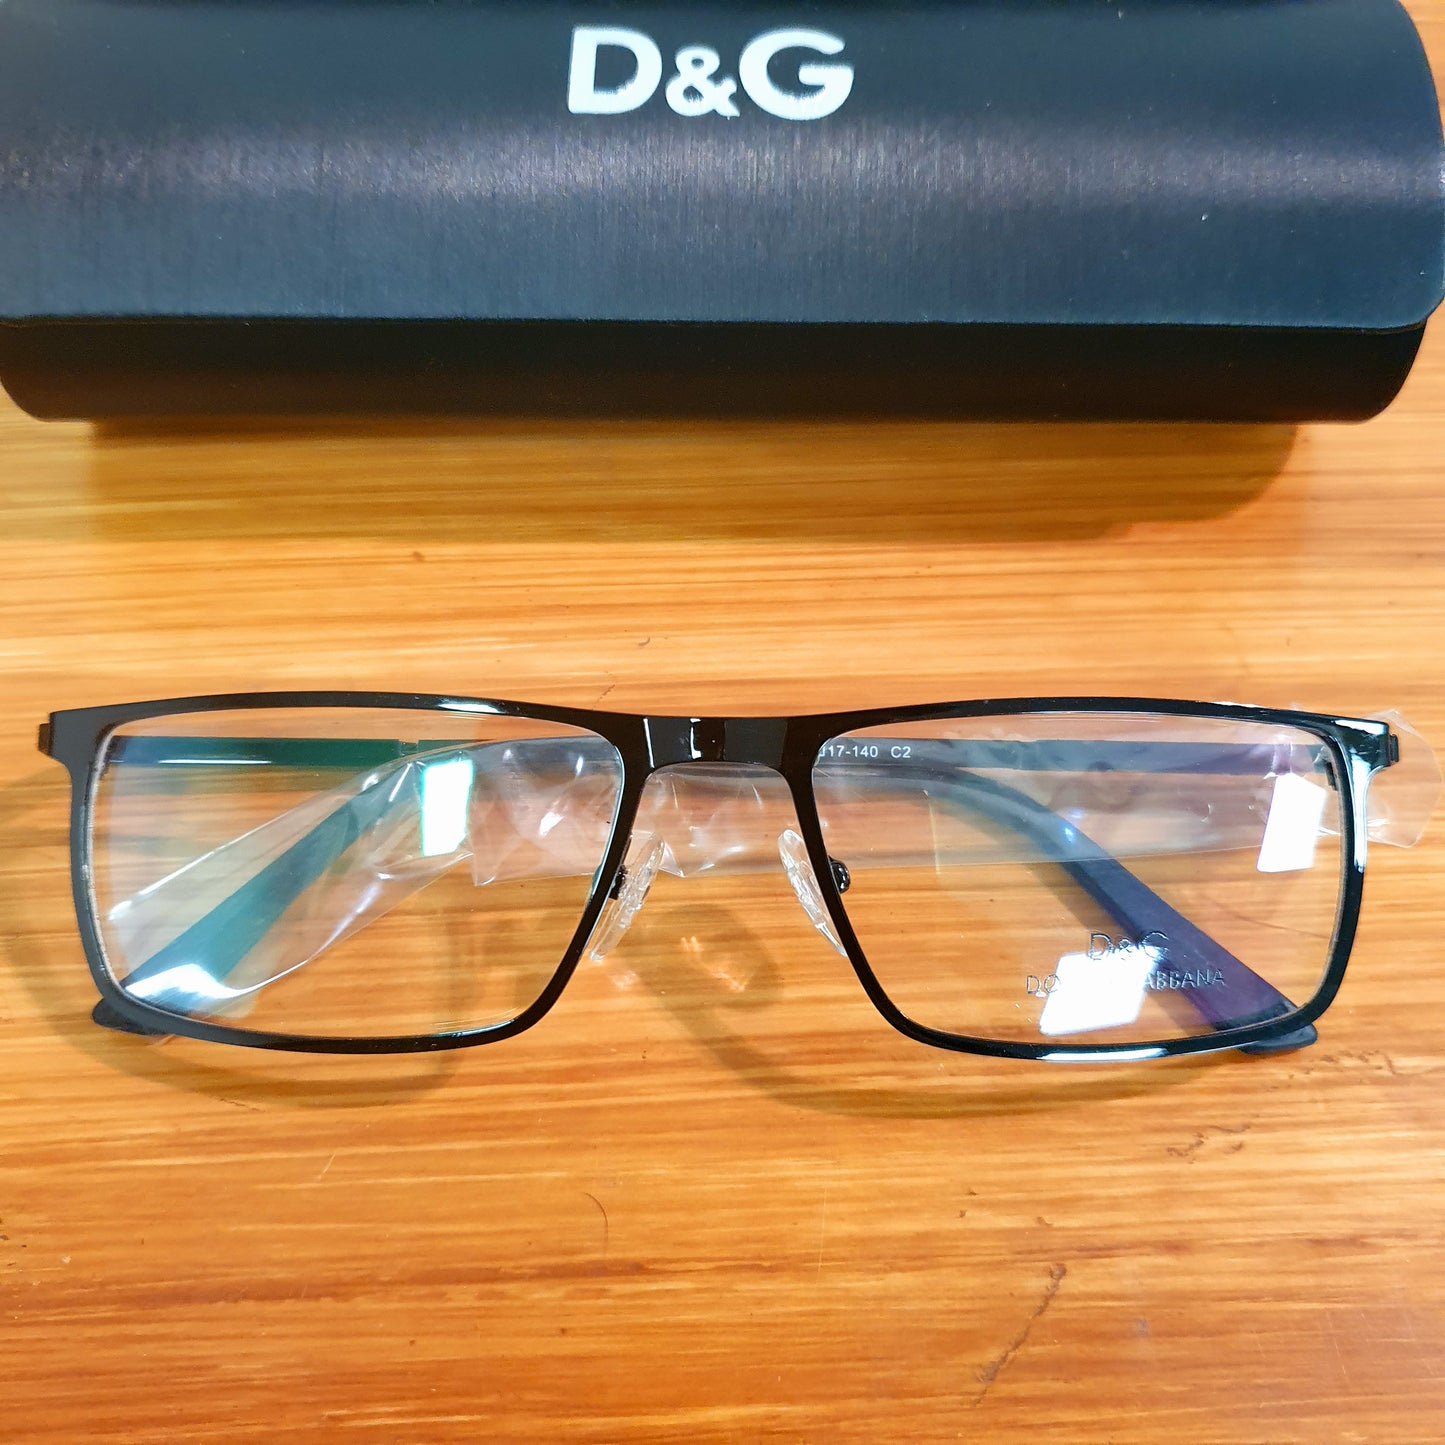 D&G Glasses Frame